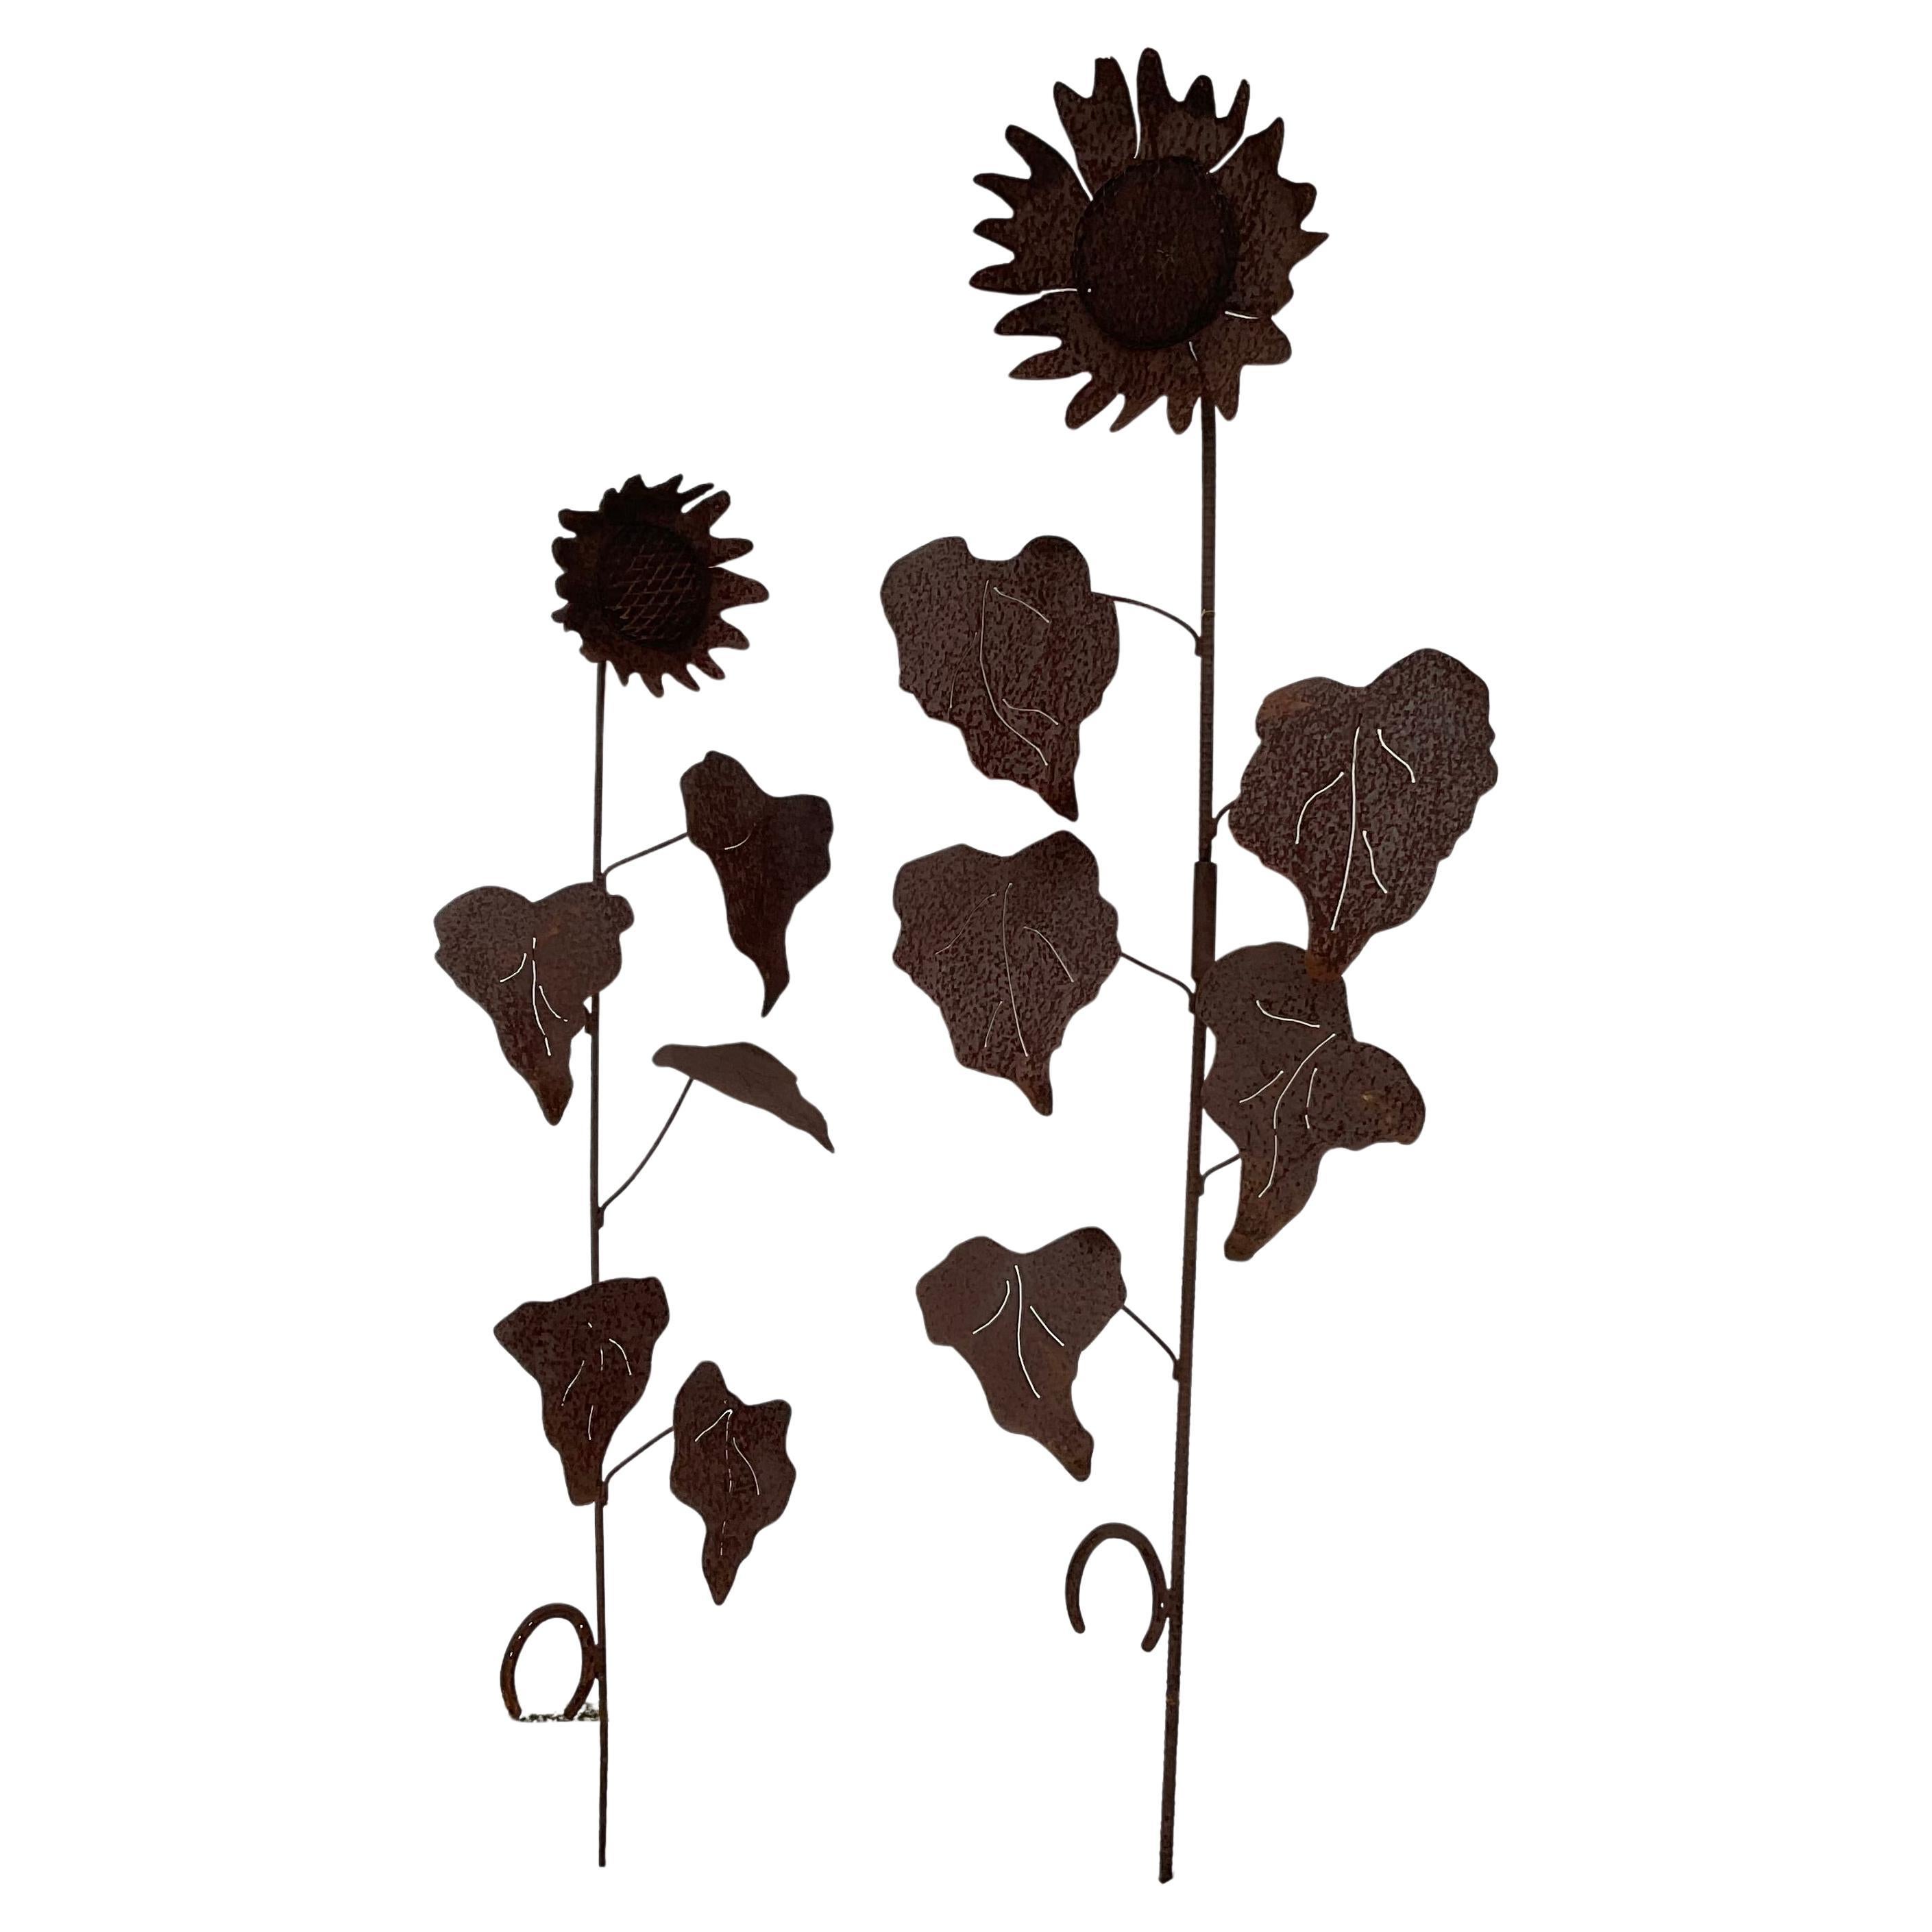 Paar verrostete Sonnenblumen-Gartenpfähle aus Metall im Vintage-Stil. Wunderschöne Rostpatina. Hohe Pfähle mit großen Blättern, gekrönt von sonnigen Sonnenblumen. Eine angenehme Ergänzung für jeden Garten.

Abmessungen:
1) 74 